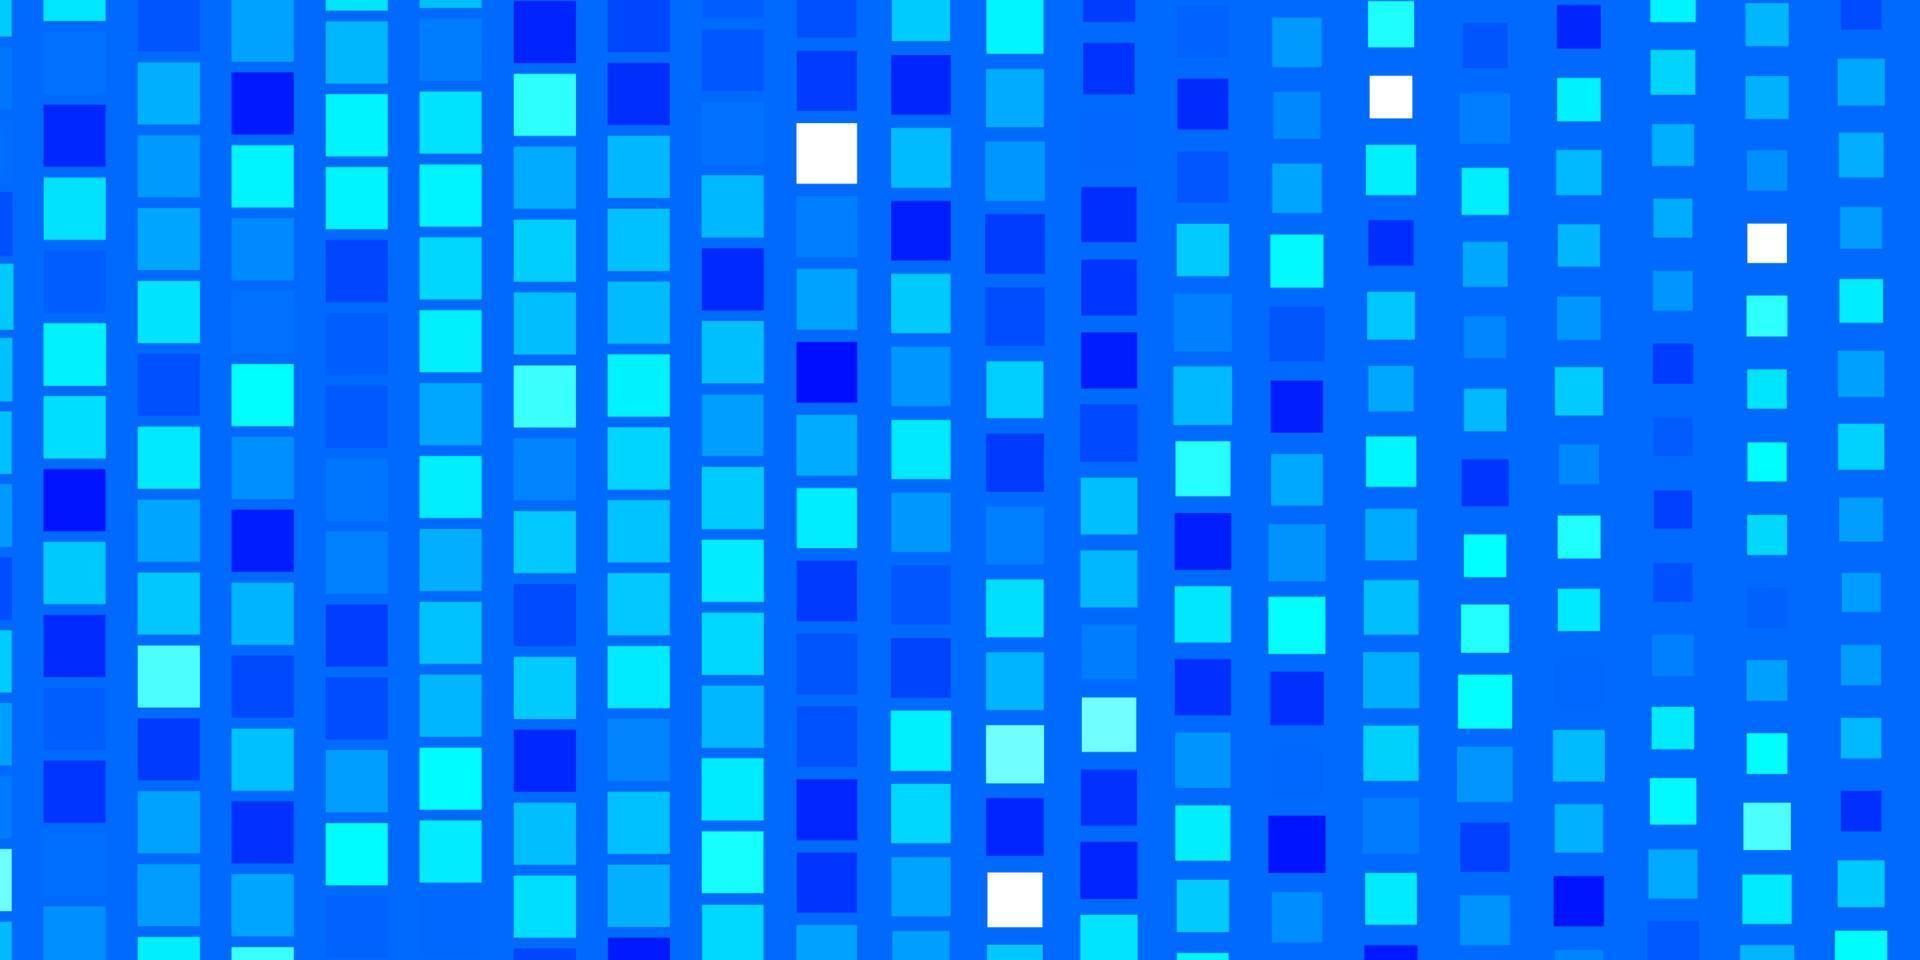 patrón de vector azul claro en estilo cuadrado.